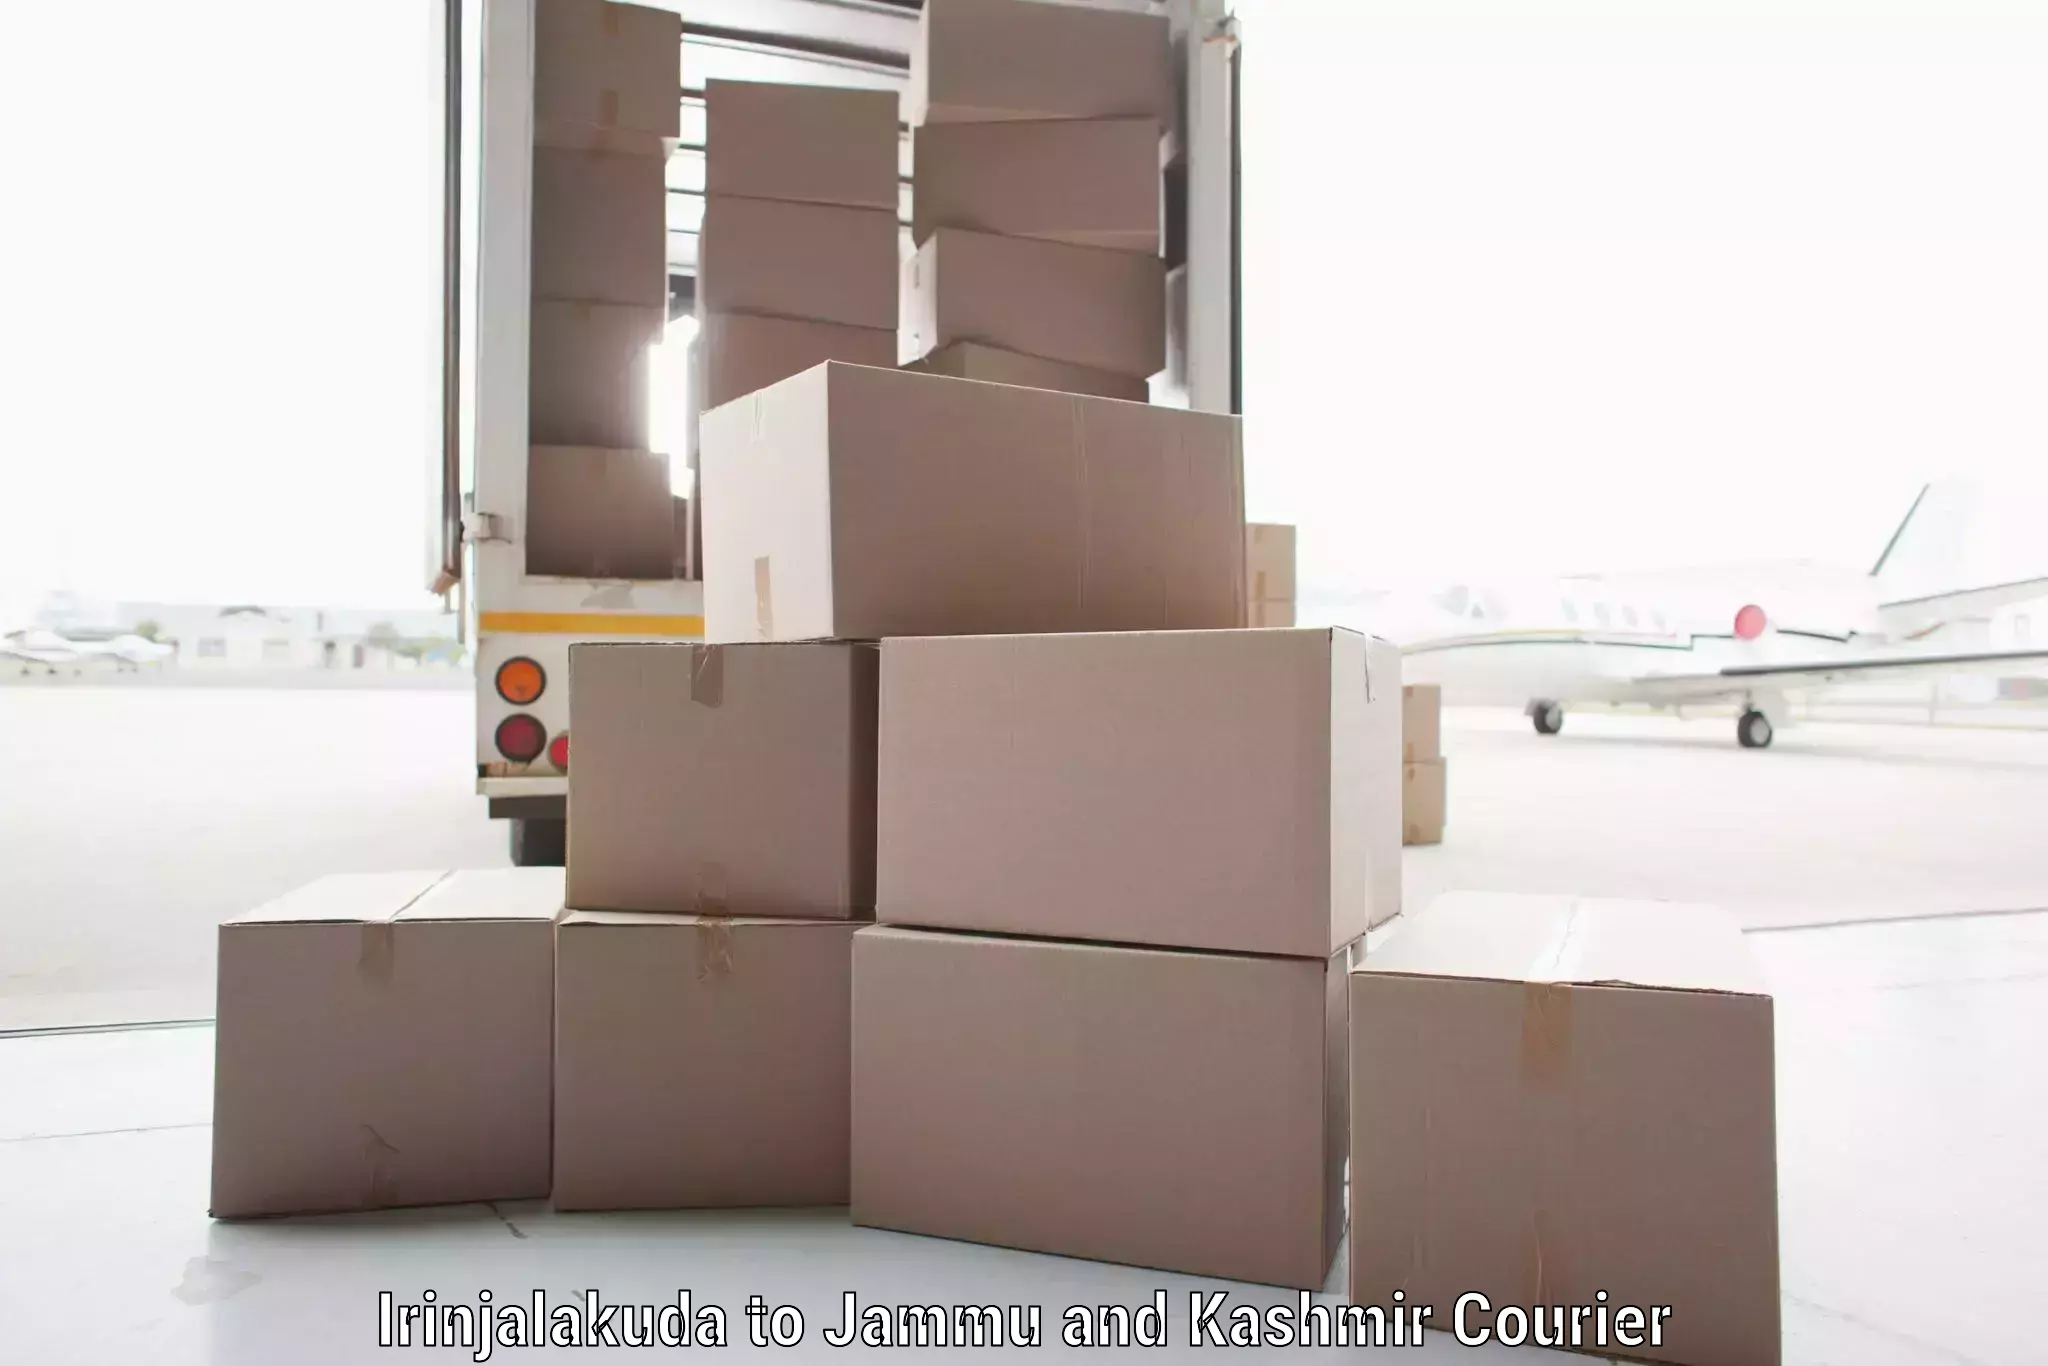 Efficient cargo handling Irinjalakuda to Reasi